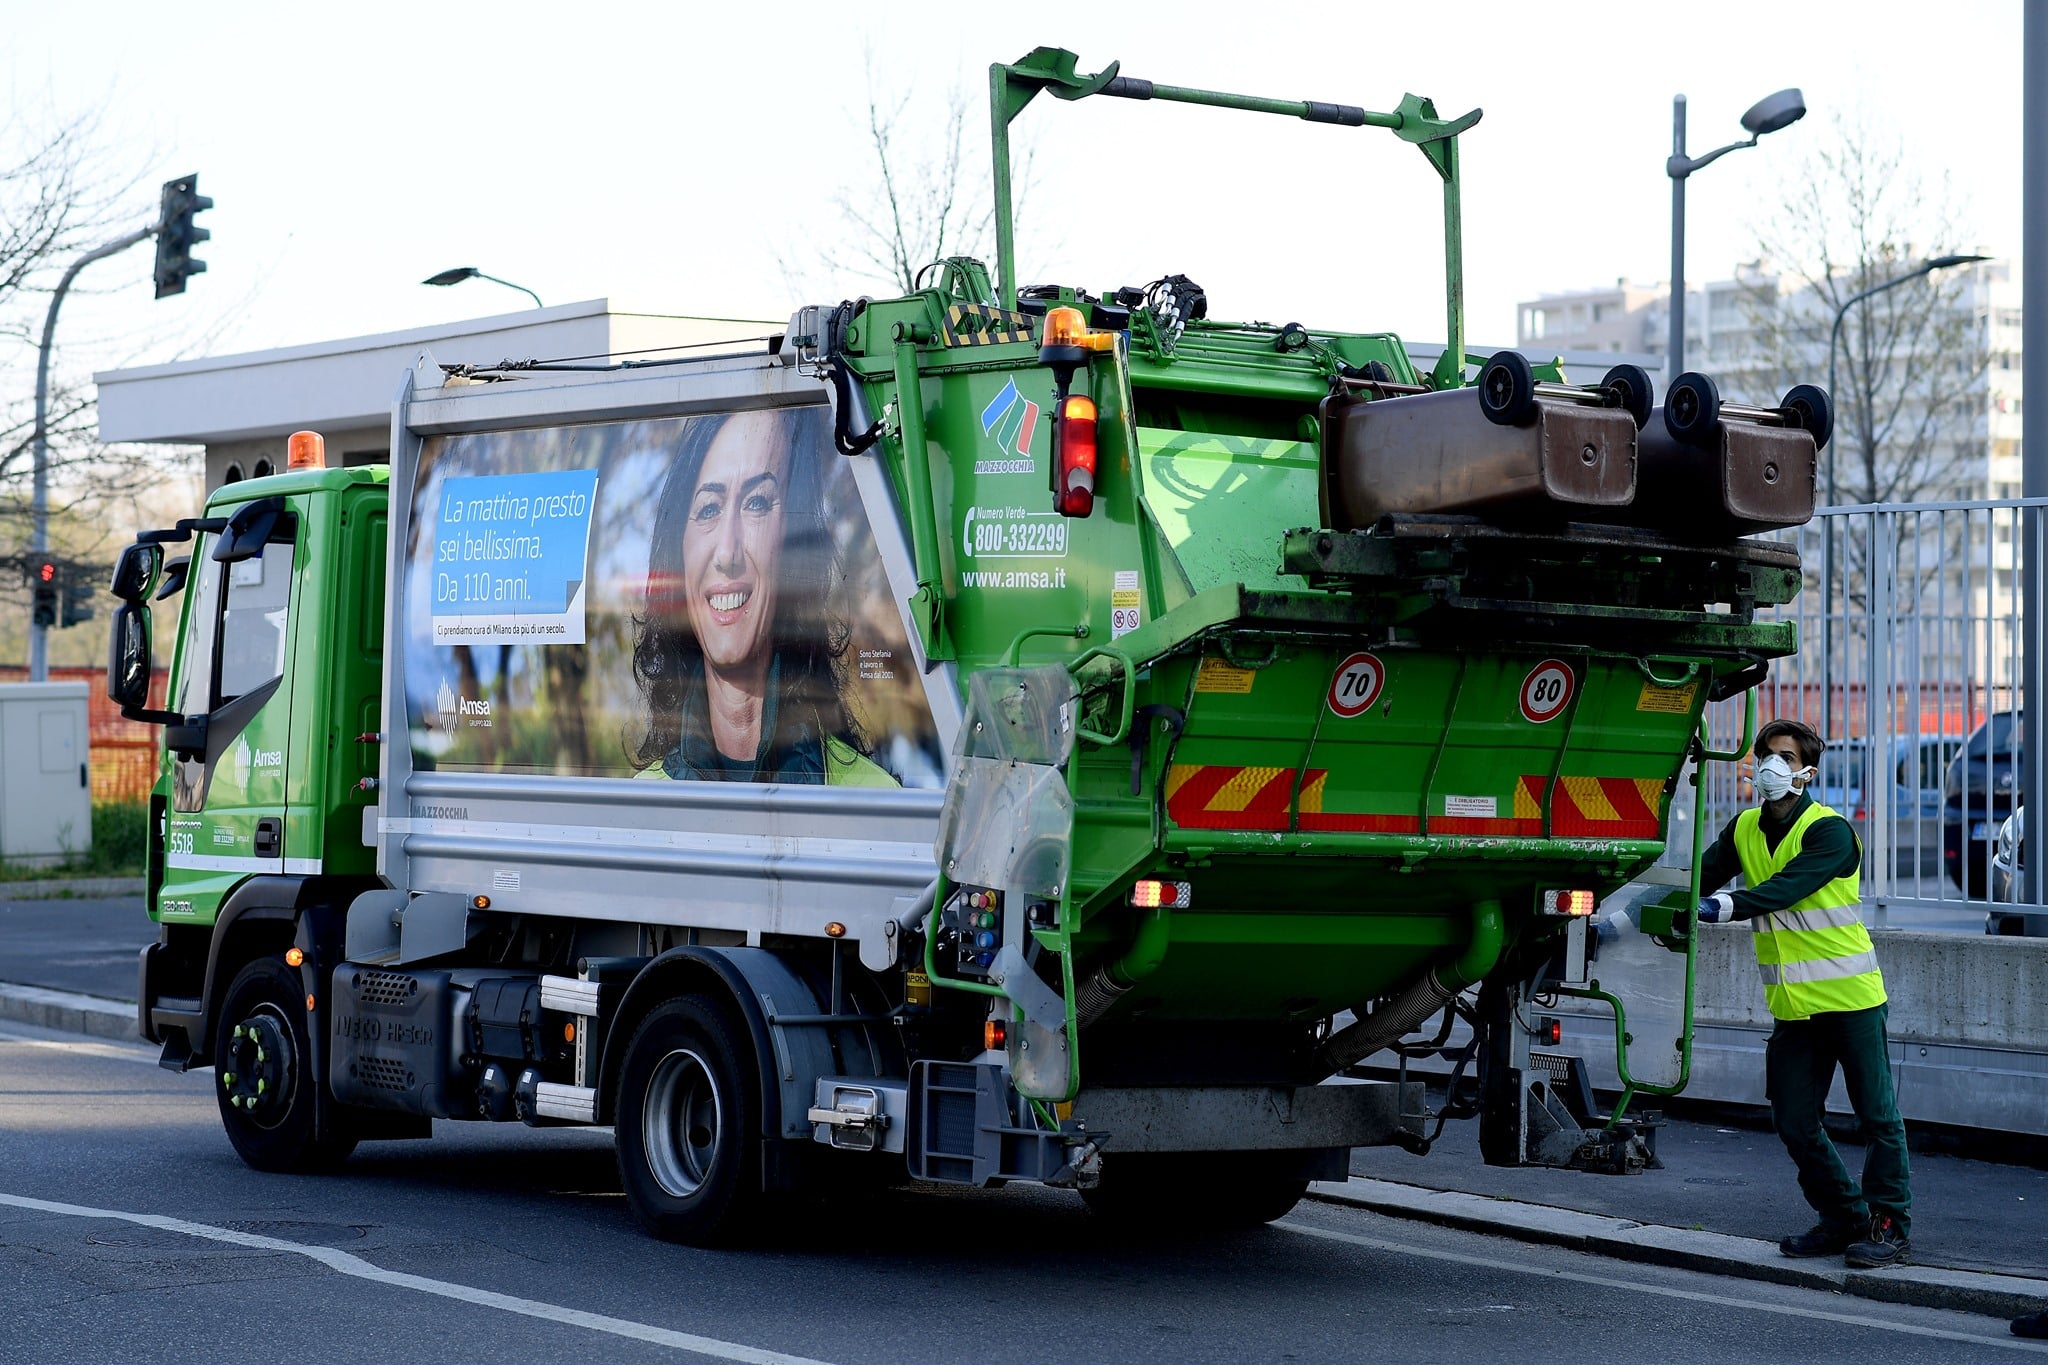 Venerdì 6 ottobre i servizi di raccolta rifiuti e pulizia strade potranno subire variazioni e/o limitazioni